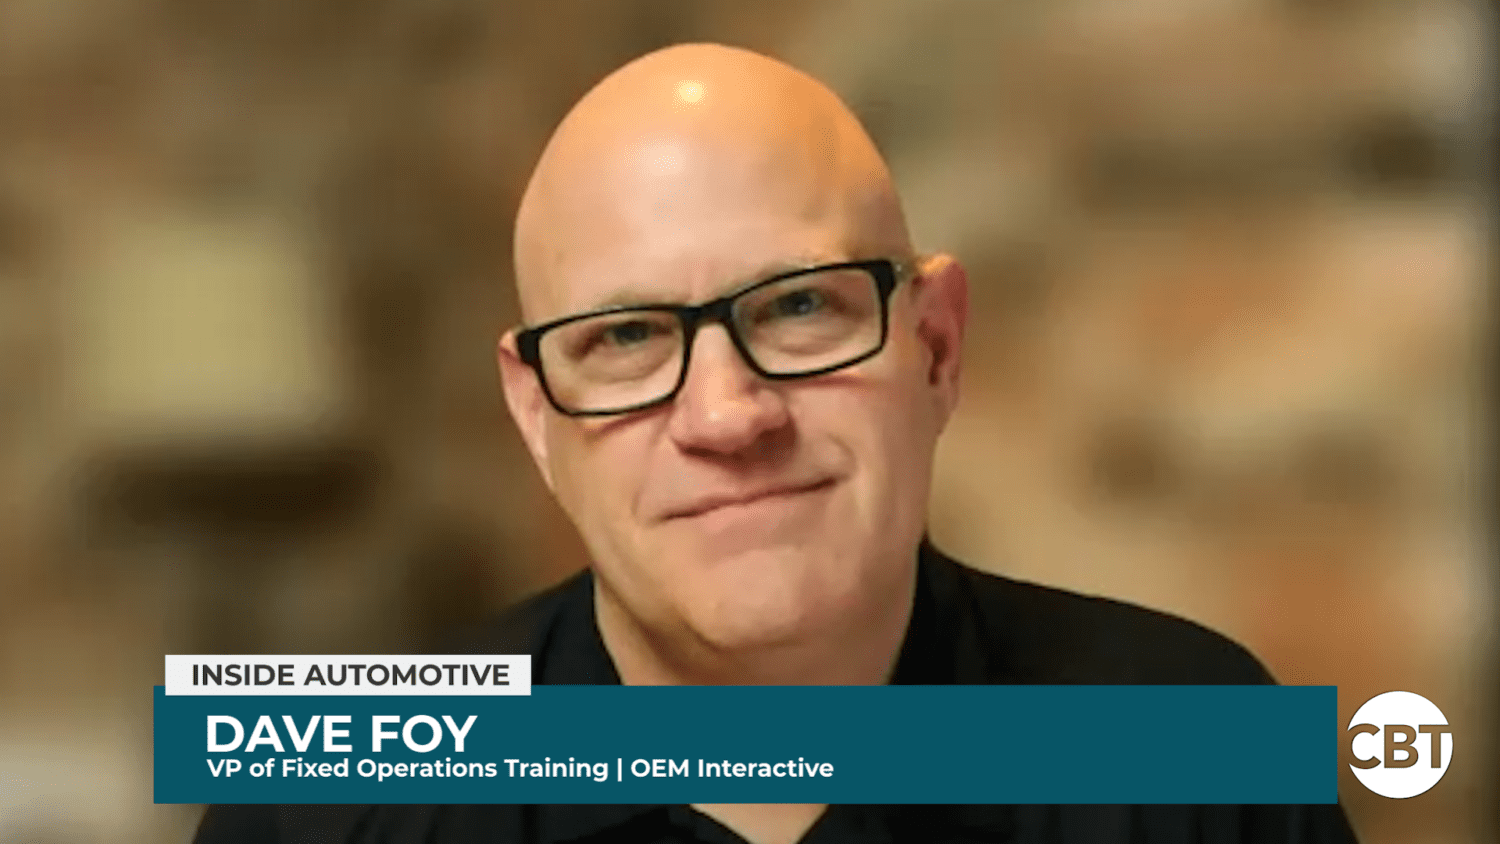 Dave Foy dołącza do Inside Automotive, aby omówić najnowsze trendy w sektorze usług stacjonarnych, w tym niedobór techników i wpływ sztucznej inteligencji.